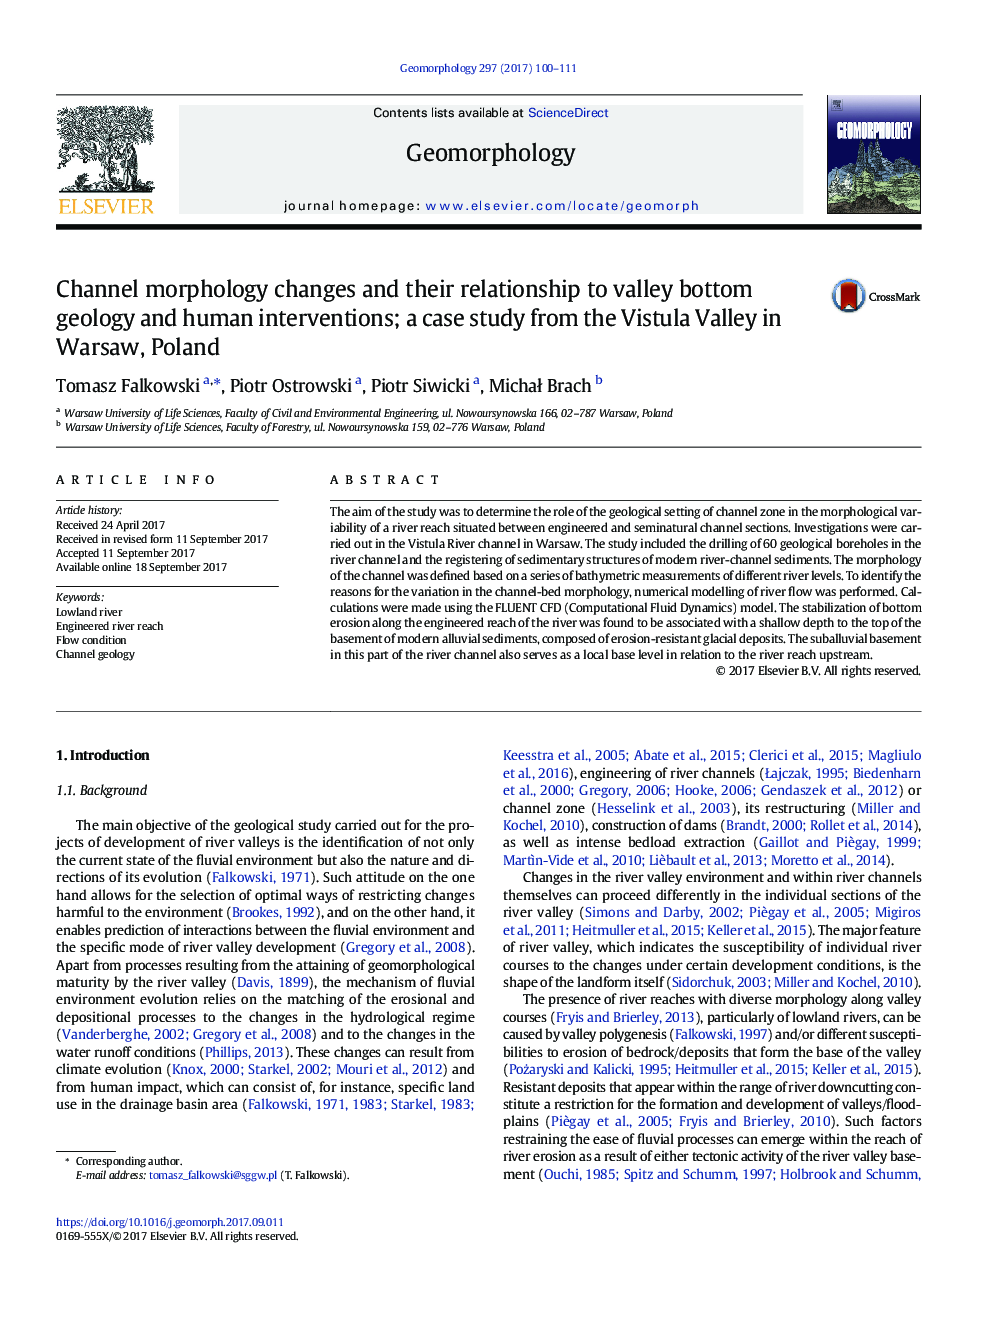 تغییرات مورفولوژی کانال و ارتباط آنها با زمین شناسی دره و مداخلات انسانی؛ یک مطالعه مورد از دره ویستولا در ورشو، لهستان